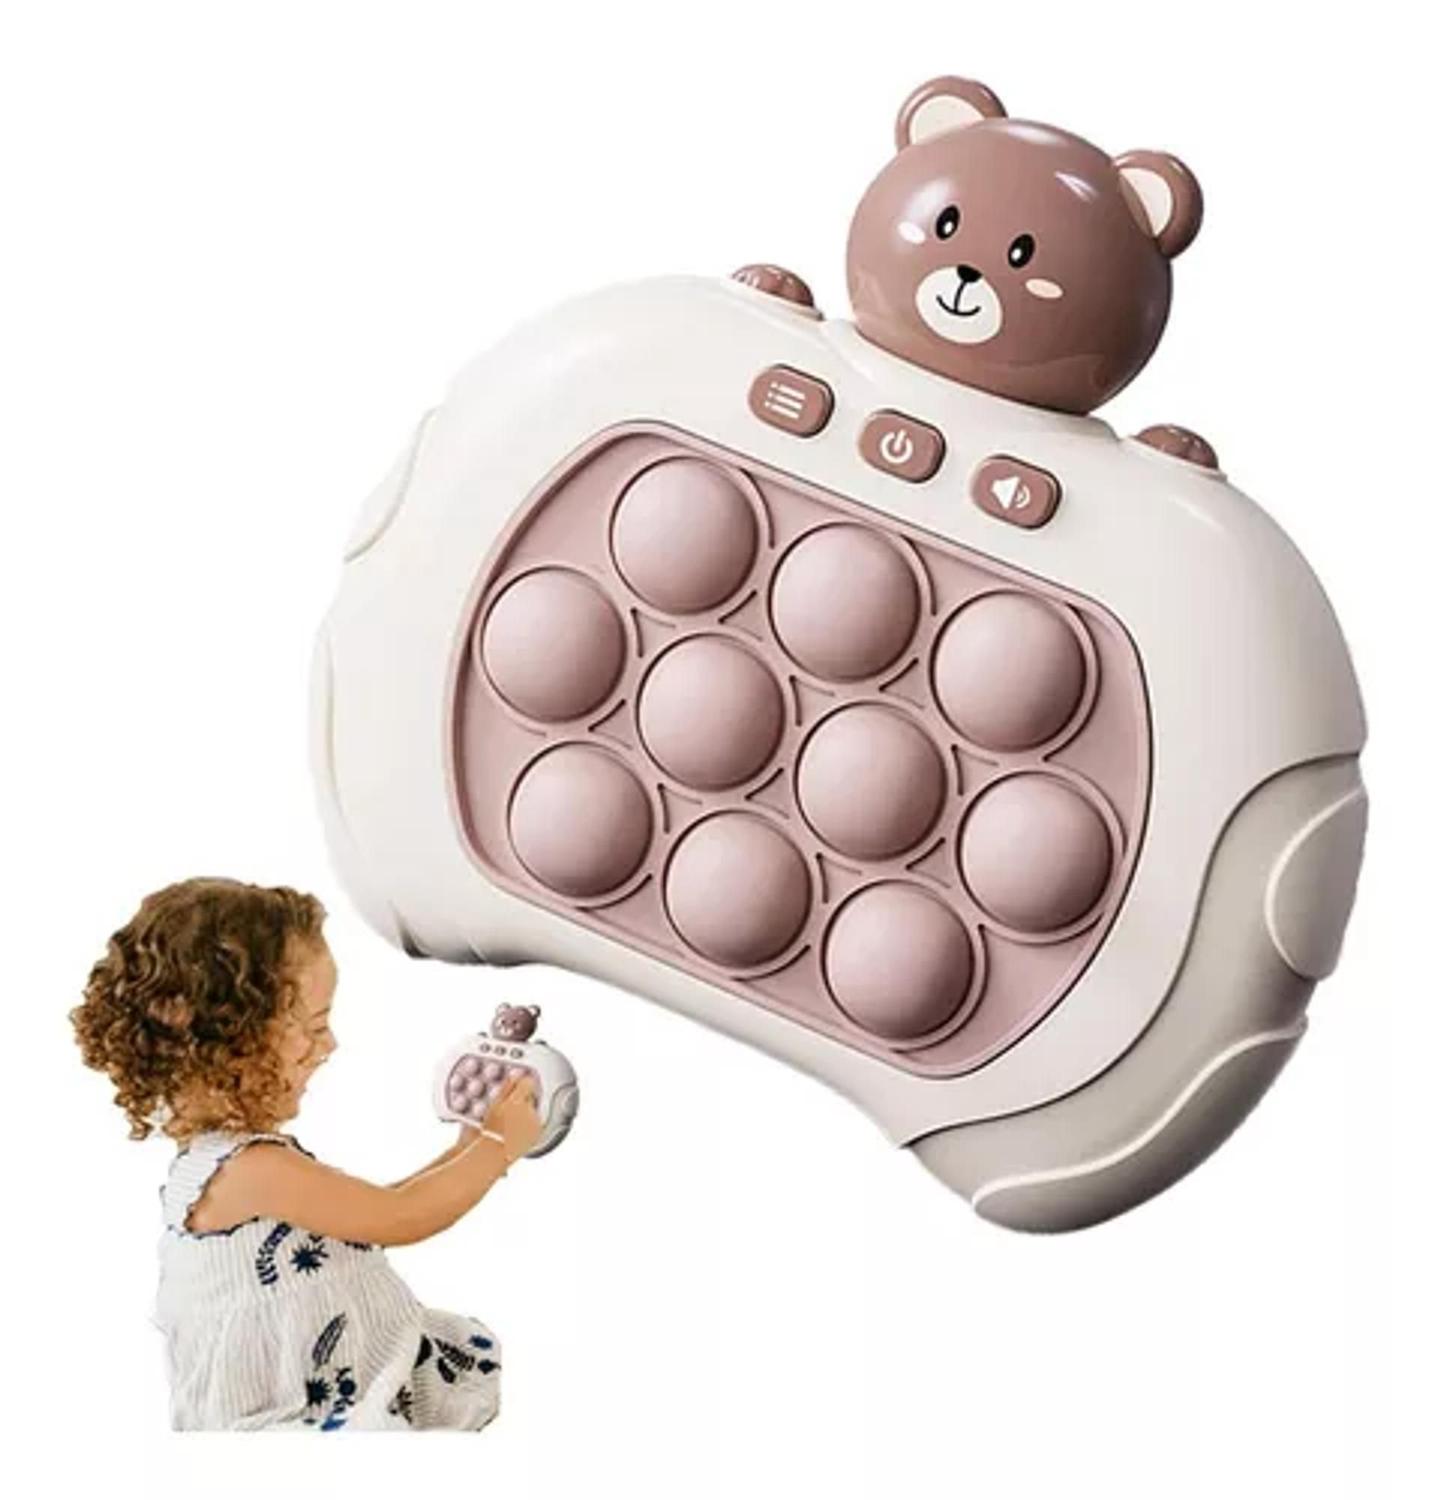 Criança está jogando um jogo popular com botões um brinquedo